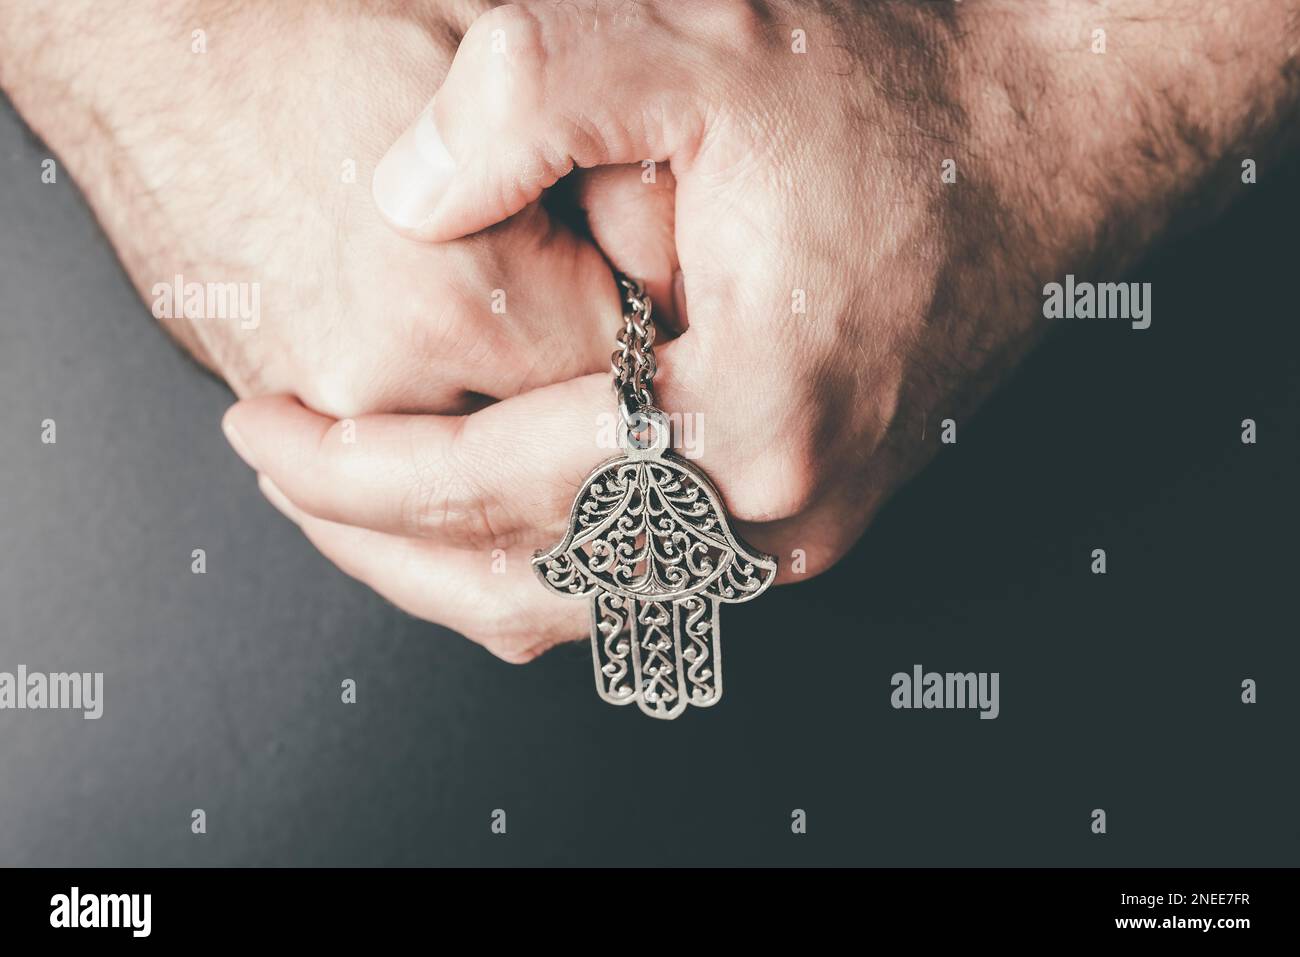 Nahaufnahme von gefalteten Händen, die Hamsa-Amulett hielten, auch bekannt als Hand von Fatima, zum Schutz vor bösem Auge, Unglück, Krankheit und Unglück Stockfoto